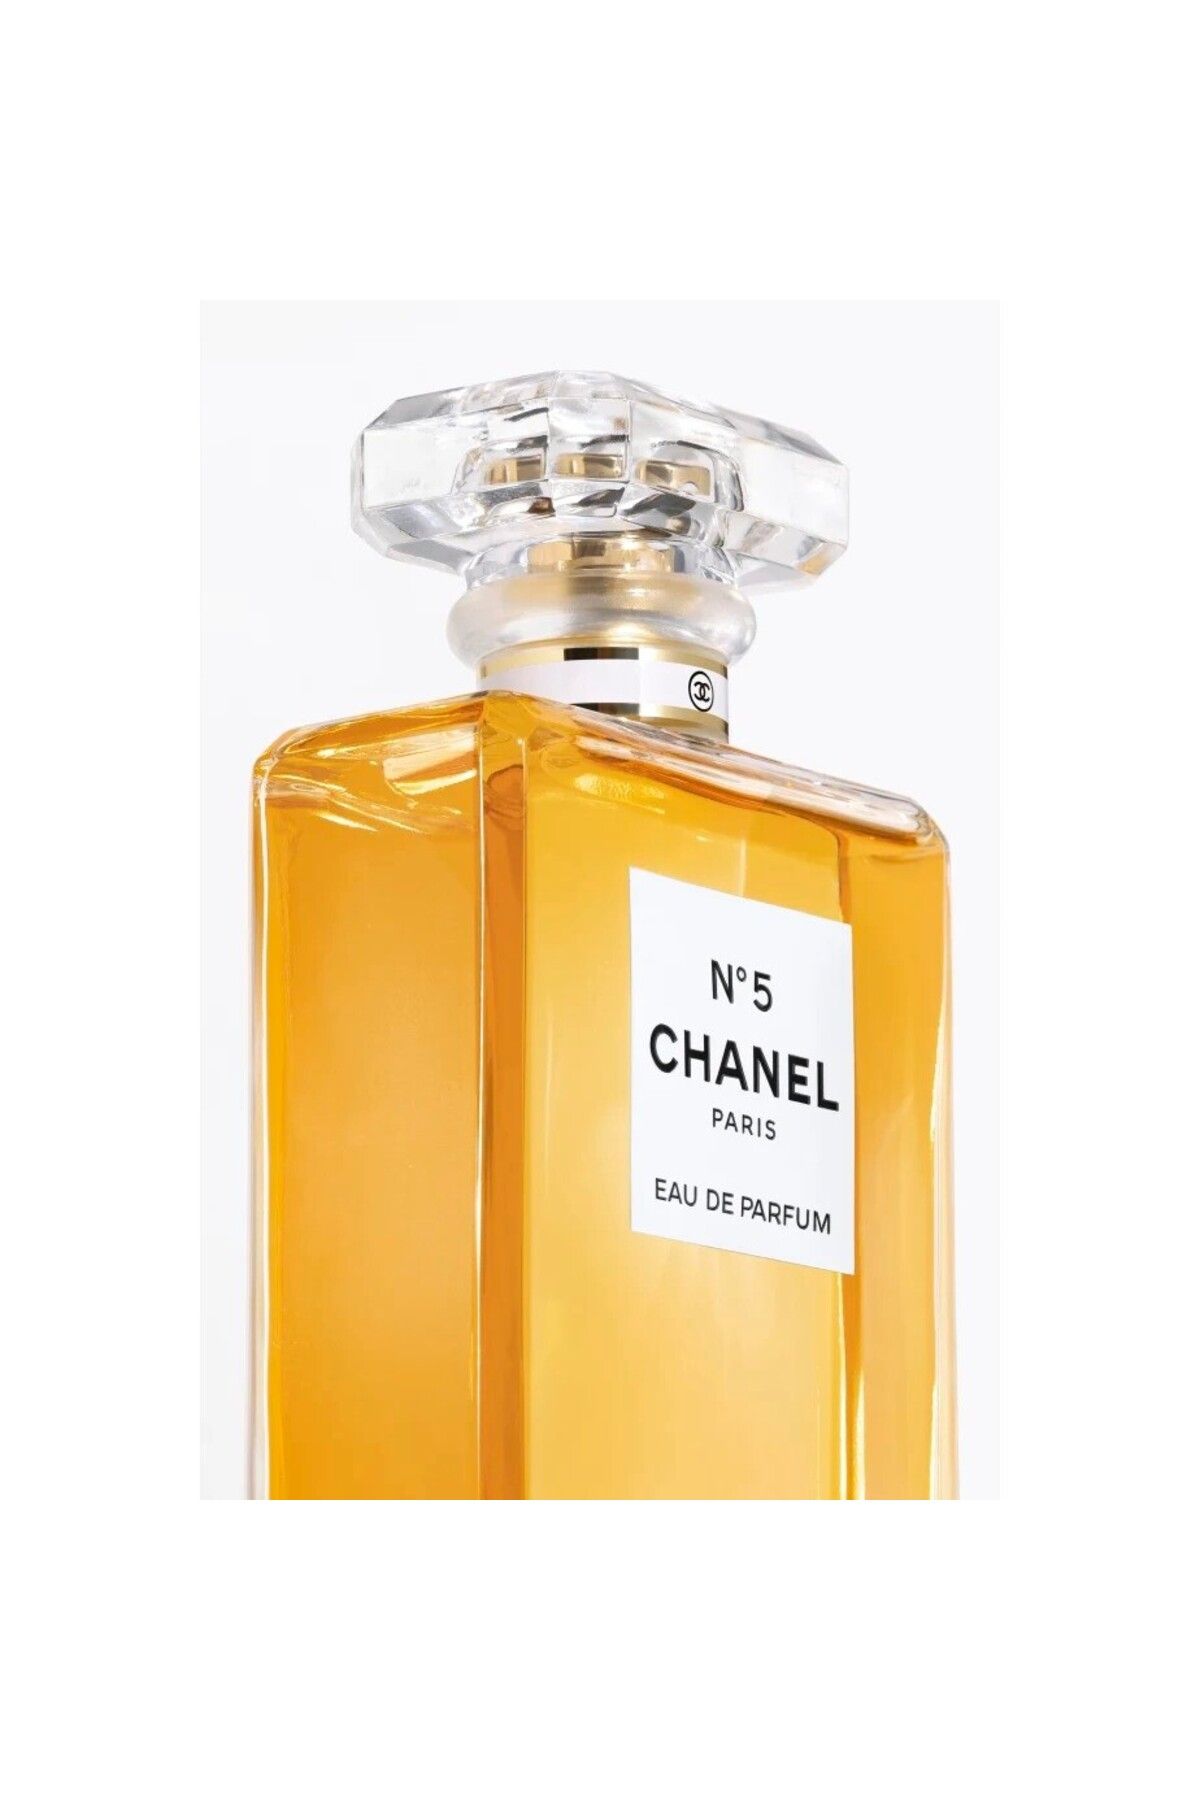 Chanel N°5 EAU DE PARFUM SPRAY-100 ml